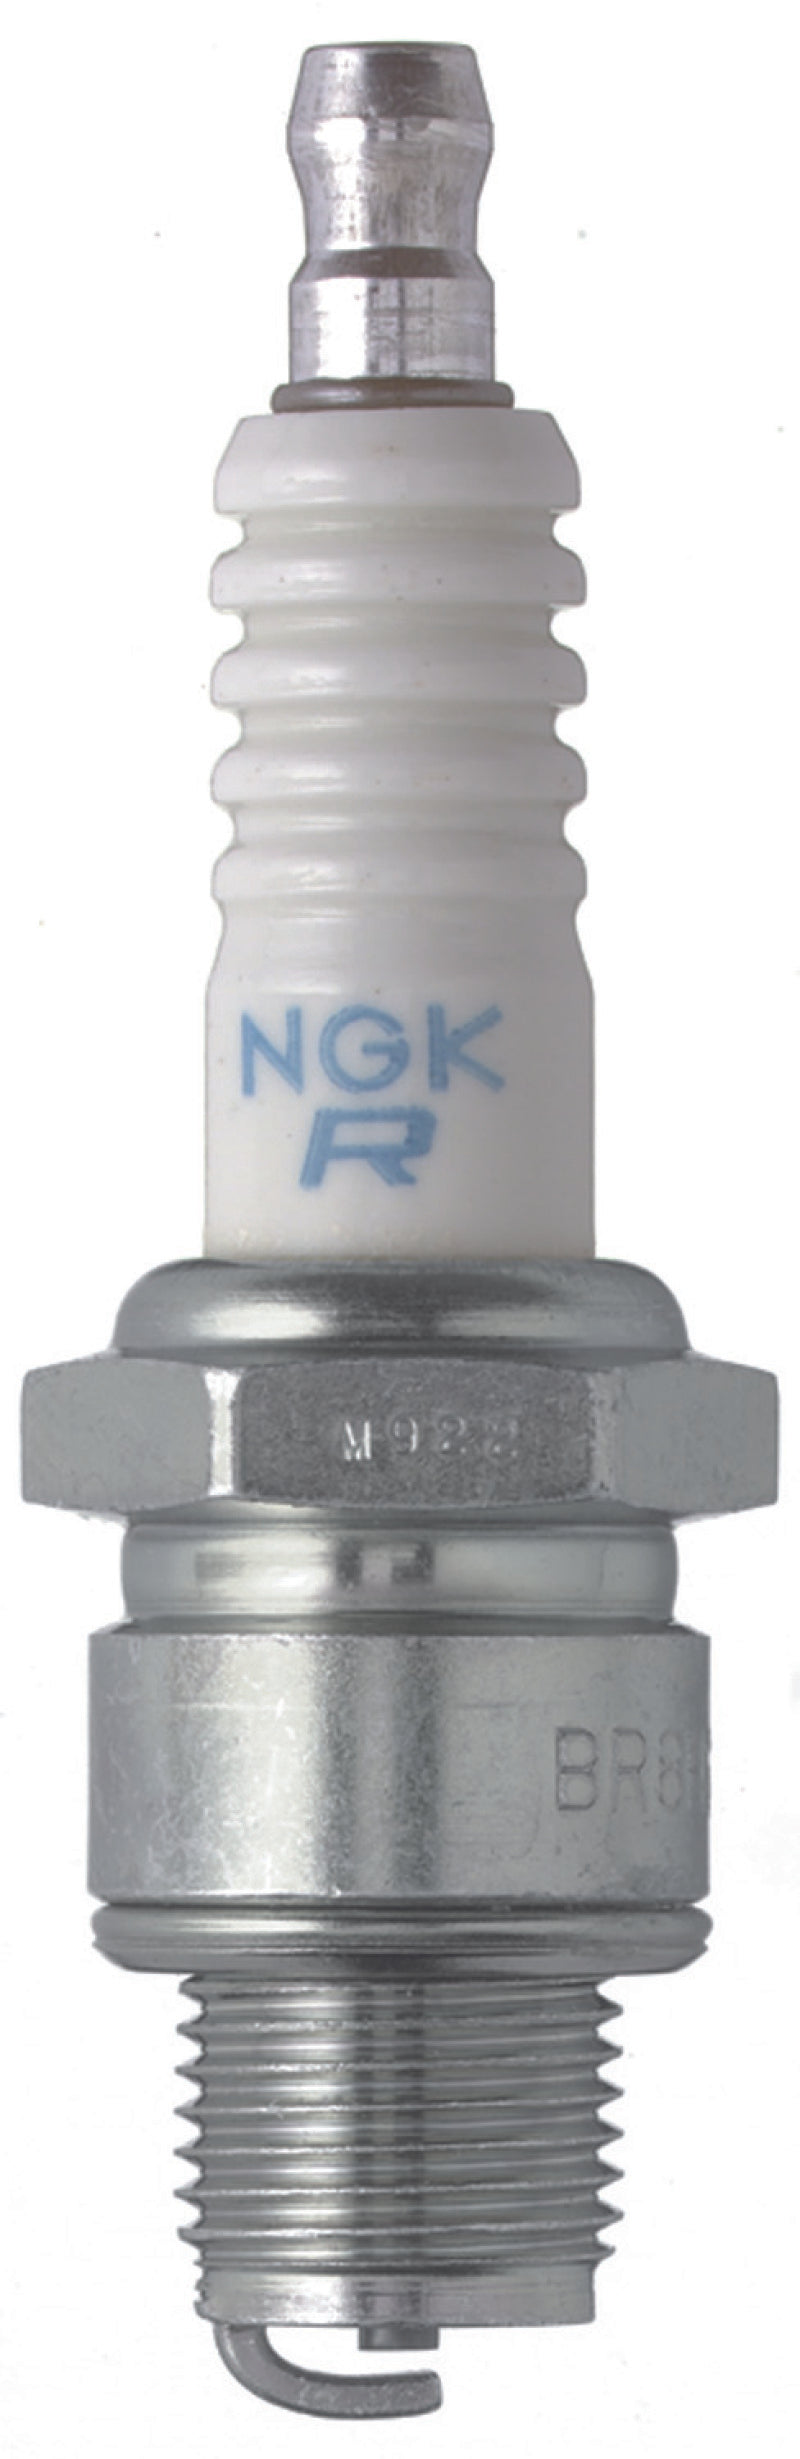 NGK Standard Spark Plug Box of 10 (BR6HS-10)